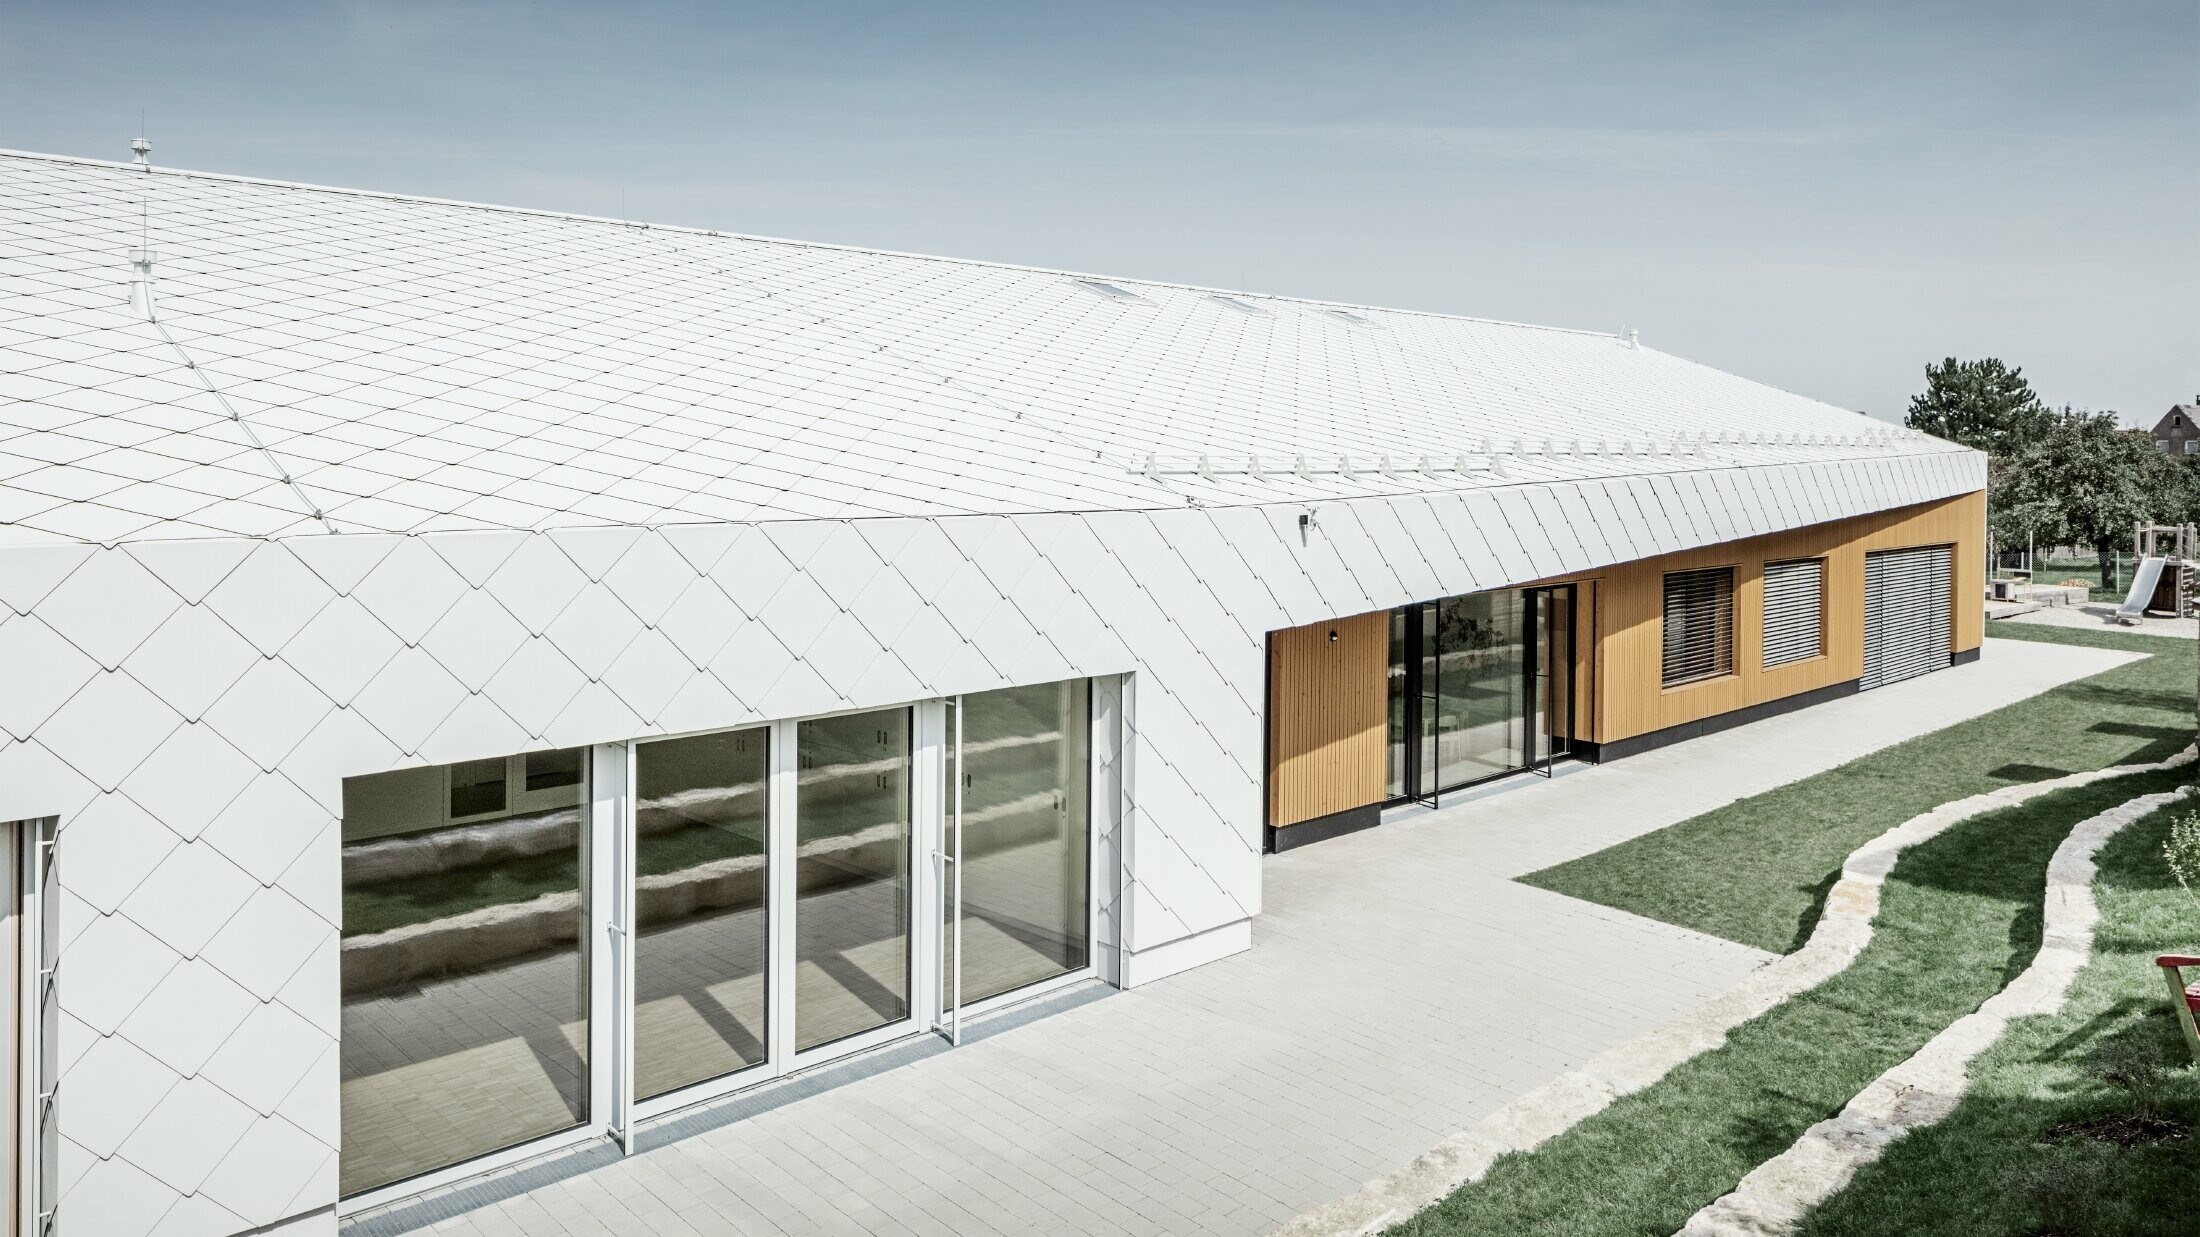 Asilo rivestito con scaglia per tetto e facciata PREFA 44 bianco PREFA, la superficie del tetto dà continuità alla facciata; ampie superfici vetrate